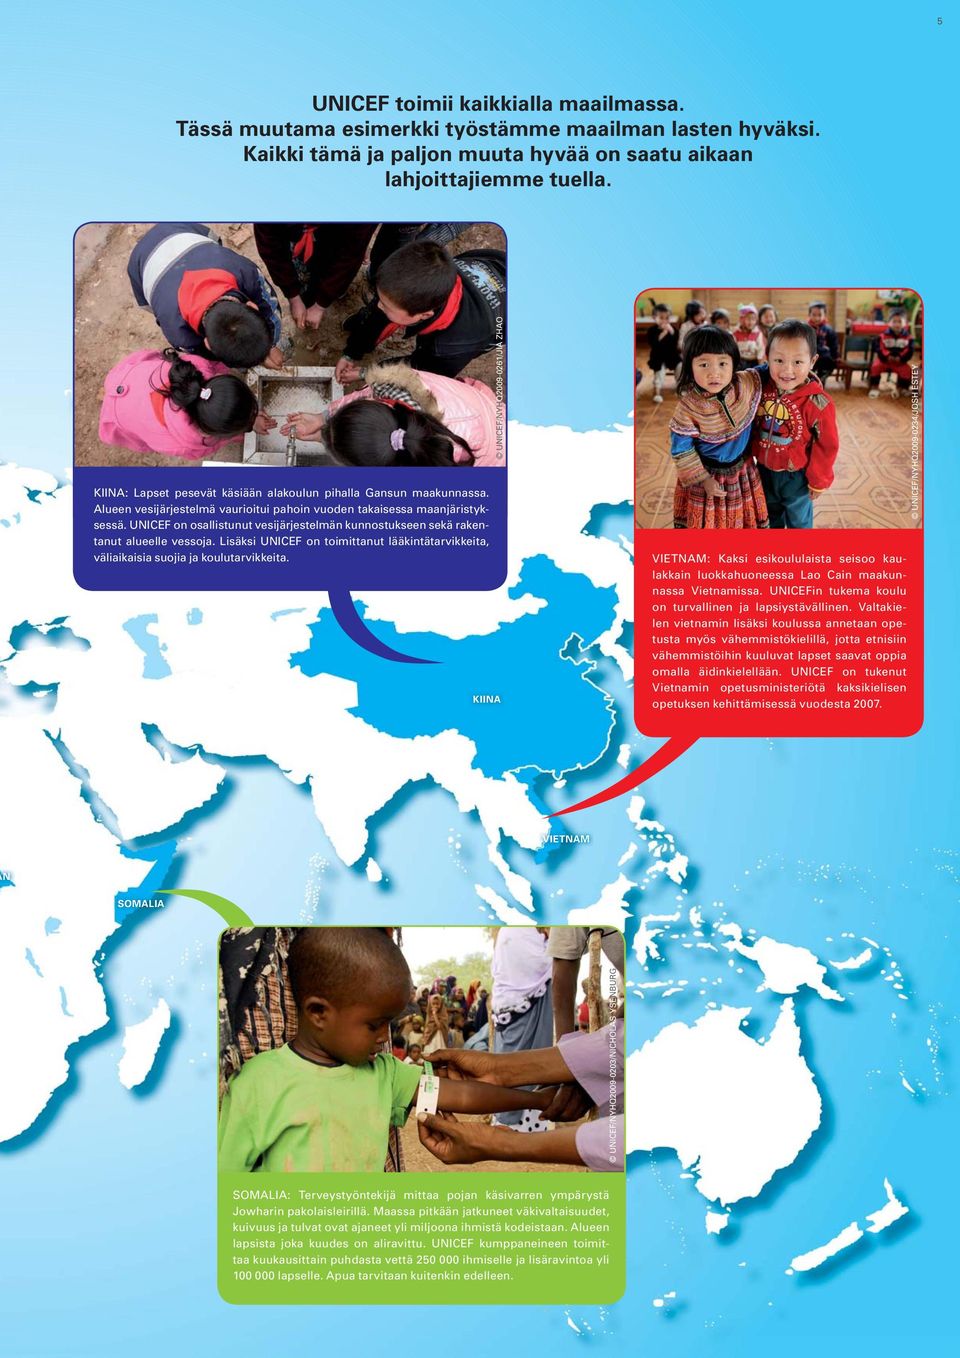 UNICEF on osallistunut vesijärjestelmän kunnostukseen sekä rakentanut alueelle vessoja. Lisäksi UNICEF on toimittanut lääkintätarvikkeita, väliaikaisia suojia ja koulutarvikkeita.